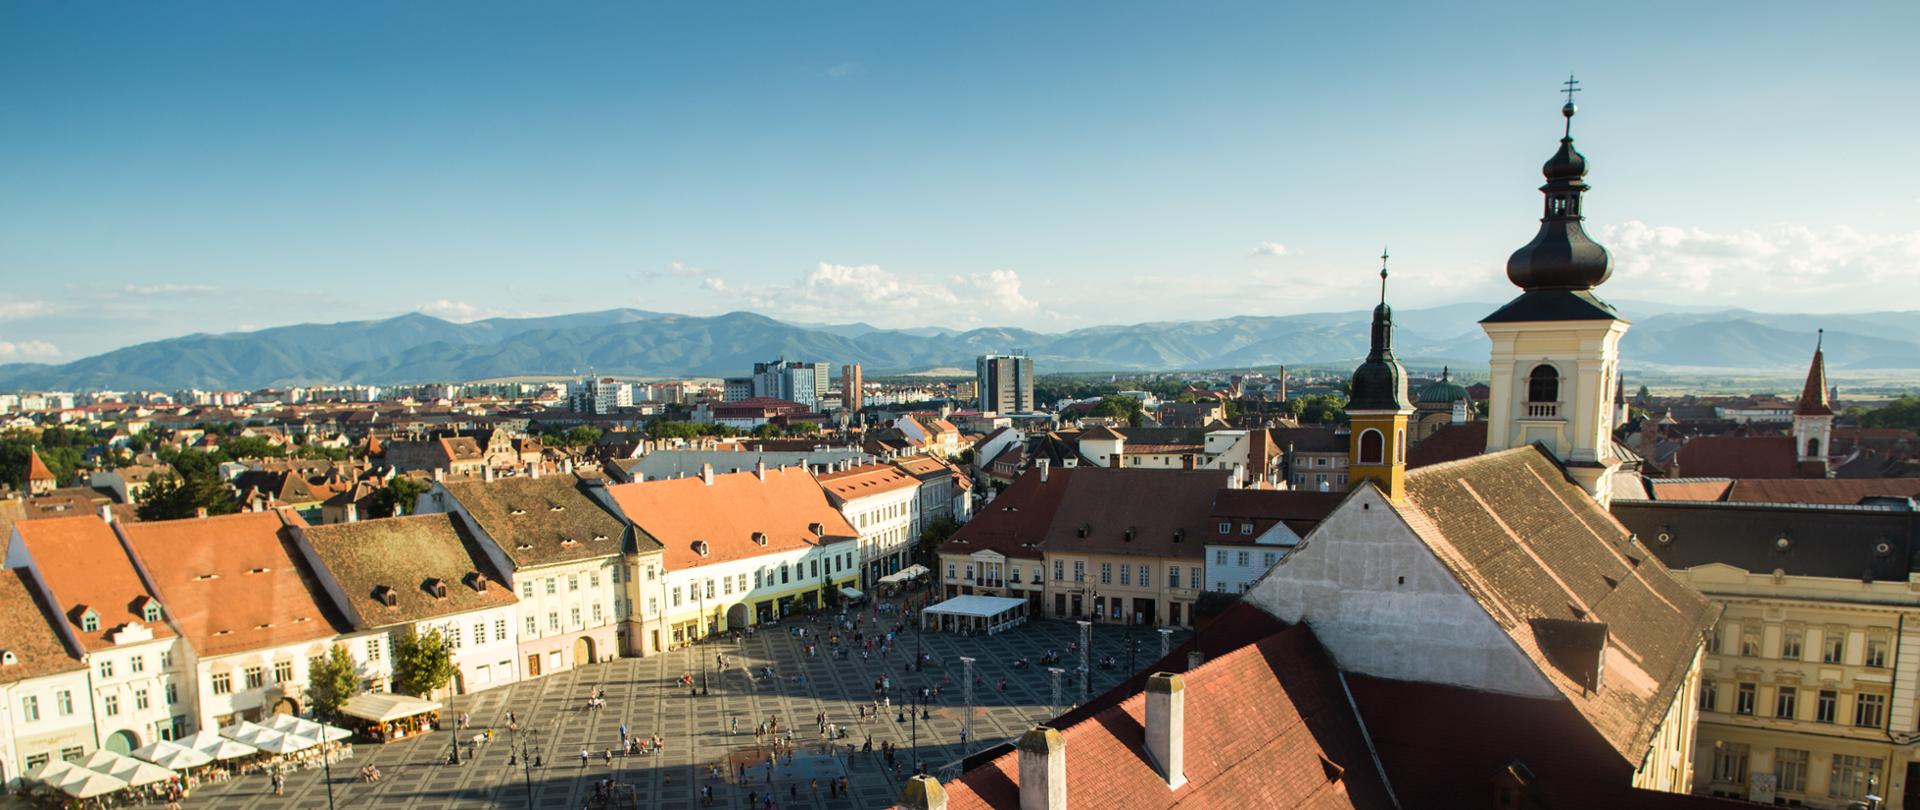 Plac Piata Mare Large w Sibiu w Rumunii, fot. bartoshd